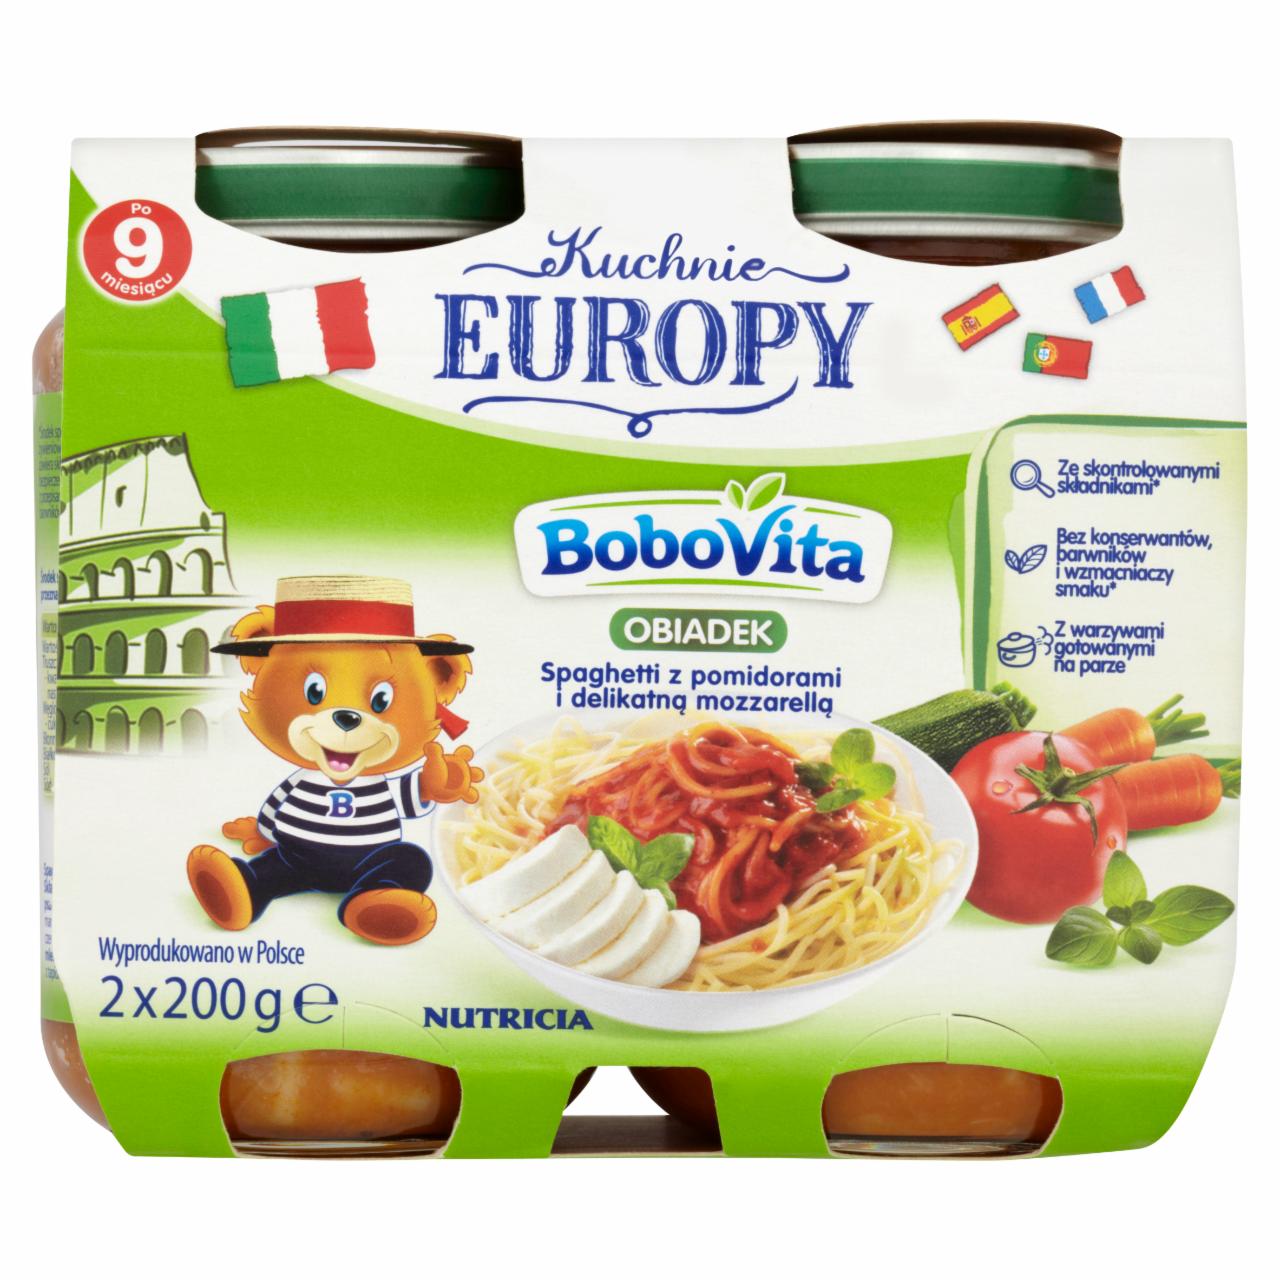 Zdjęcia - BoboVita Kuchnie Europy Obiadek Spaghetti z pomidorami i mozzarellą po 9 miesiącu 2 x 200 g